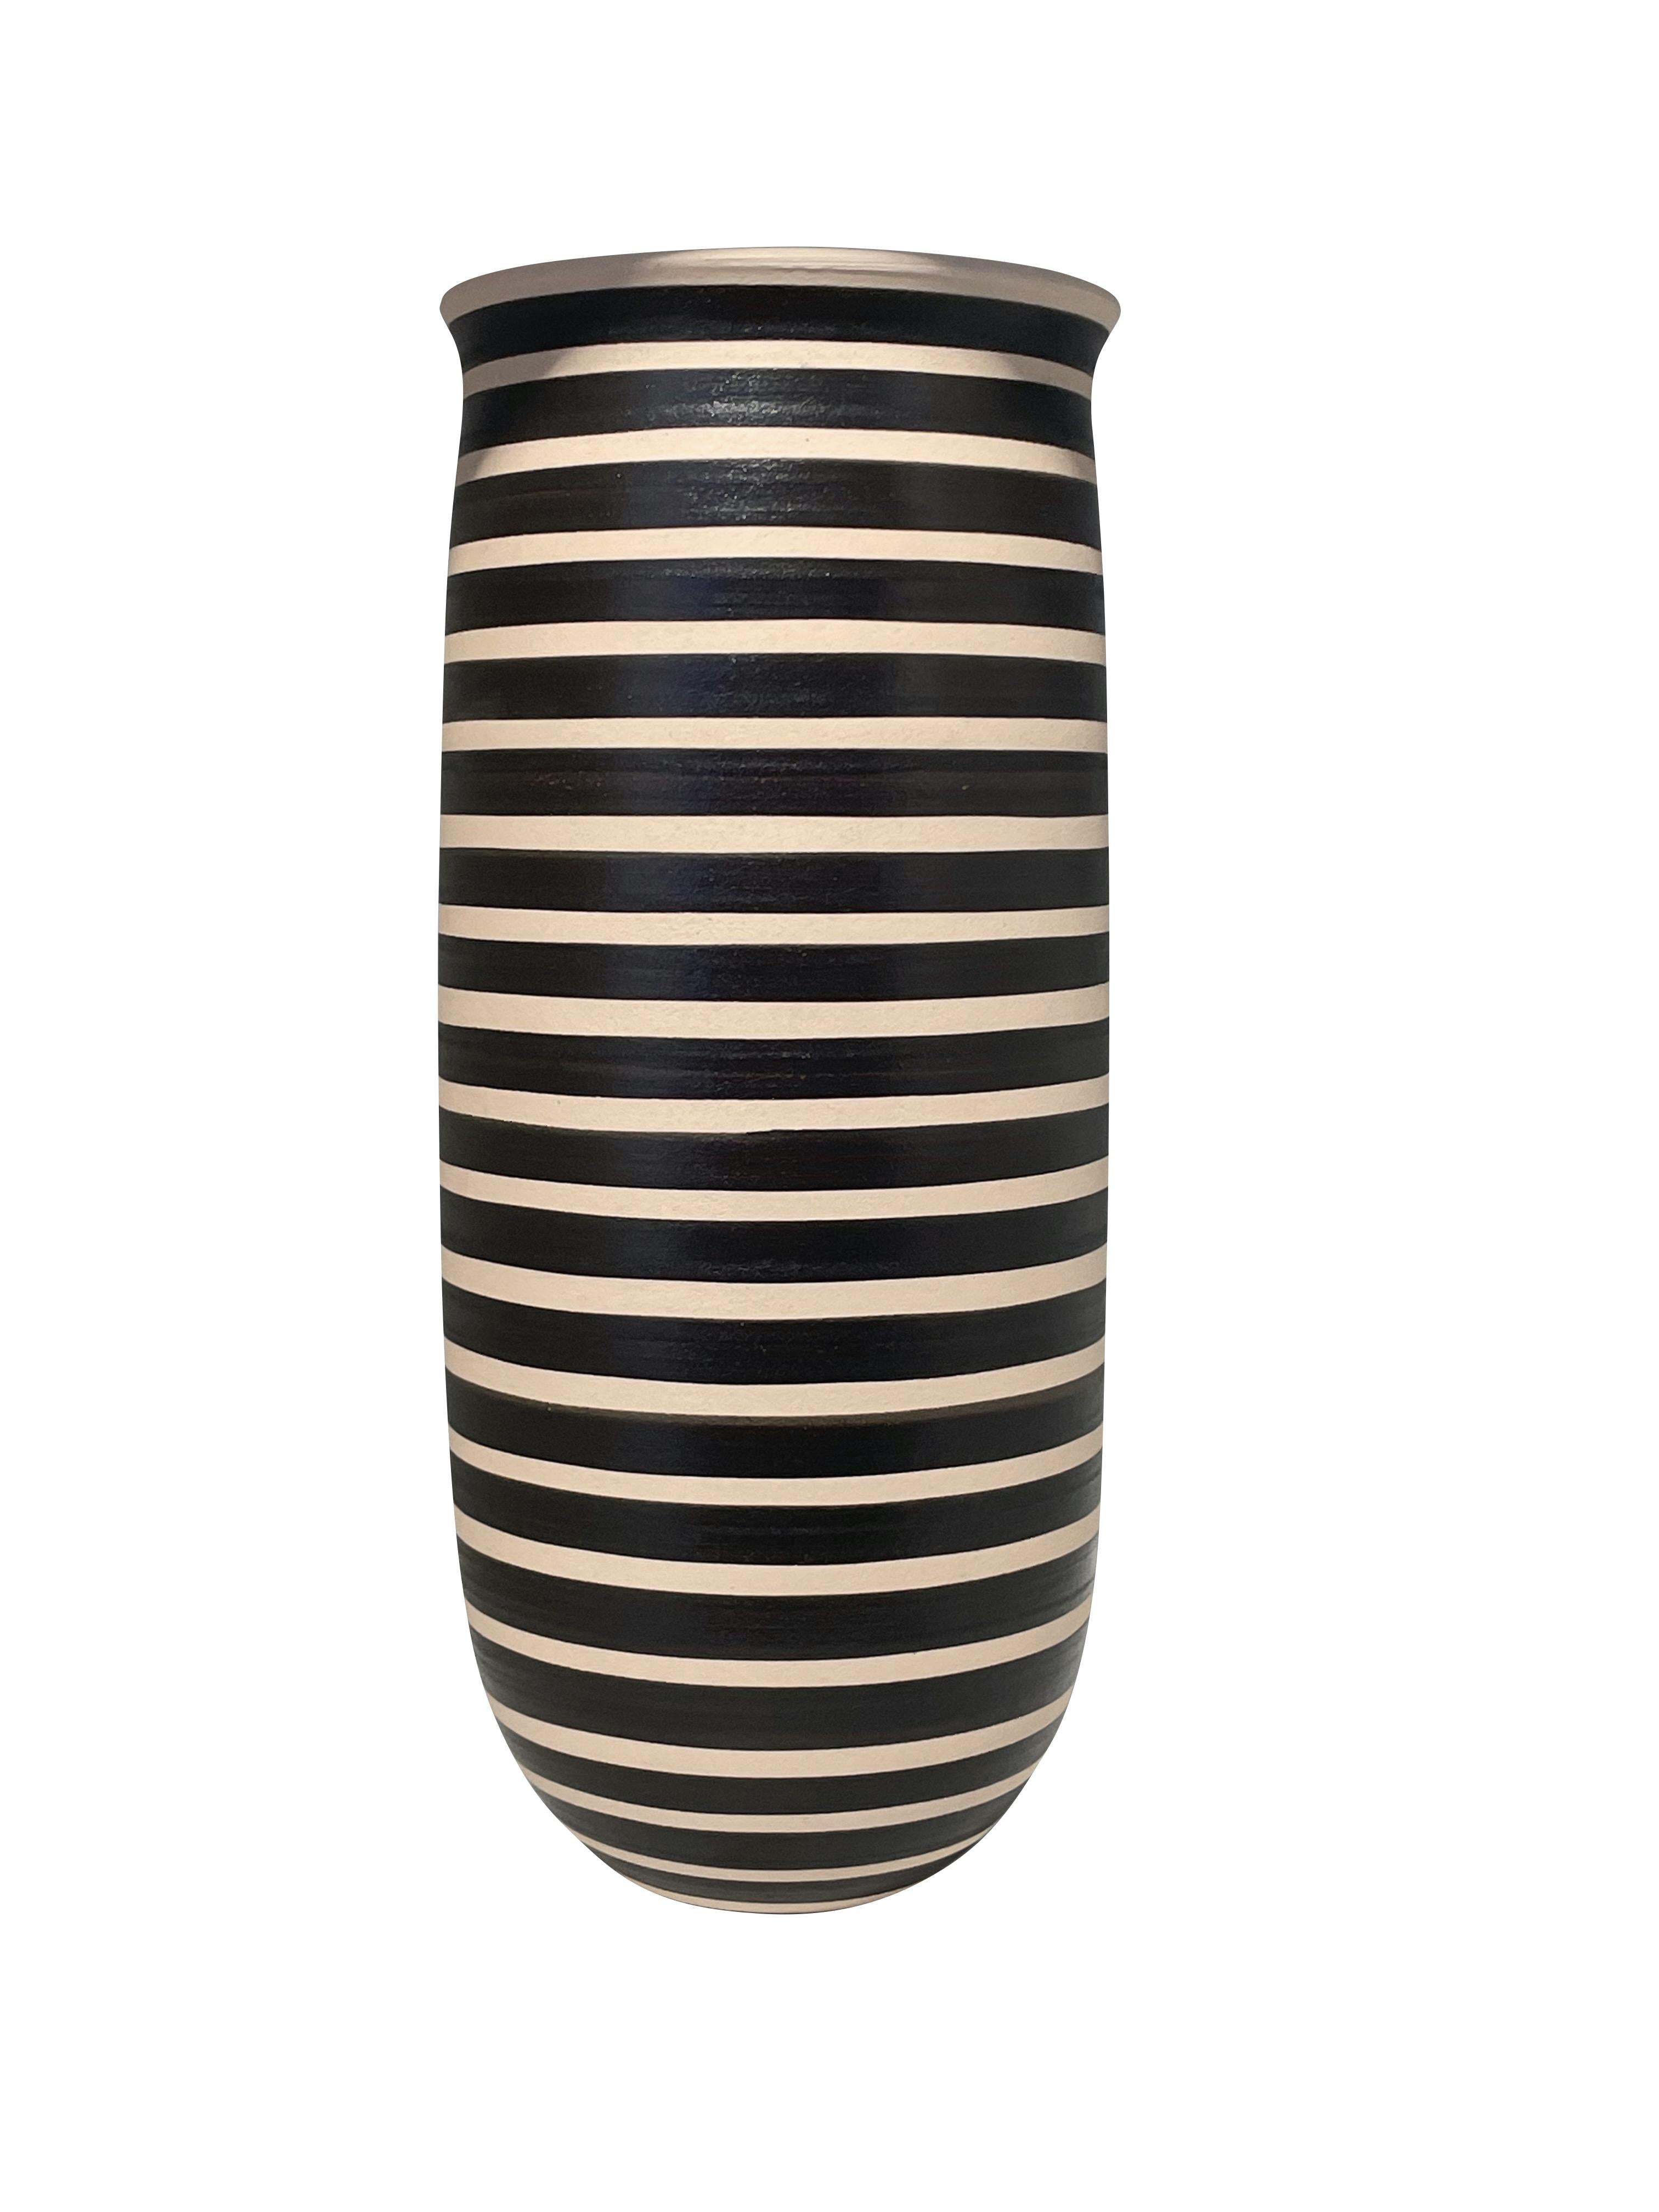 Vase contemporain turc fait à la main, noir et crème, à large bande de rayures.
Ouverture large.
Peut contenir de l'eau.
Deux disponibles et vendus individuellement.
D'une grande collection.